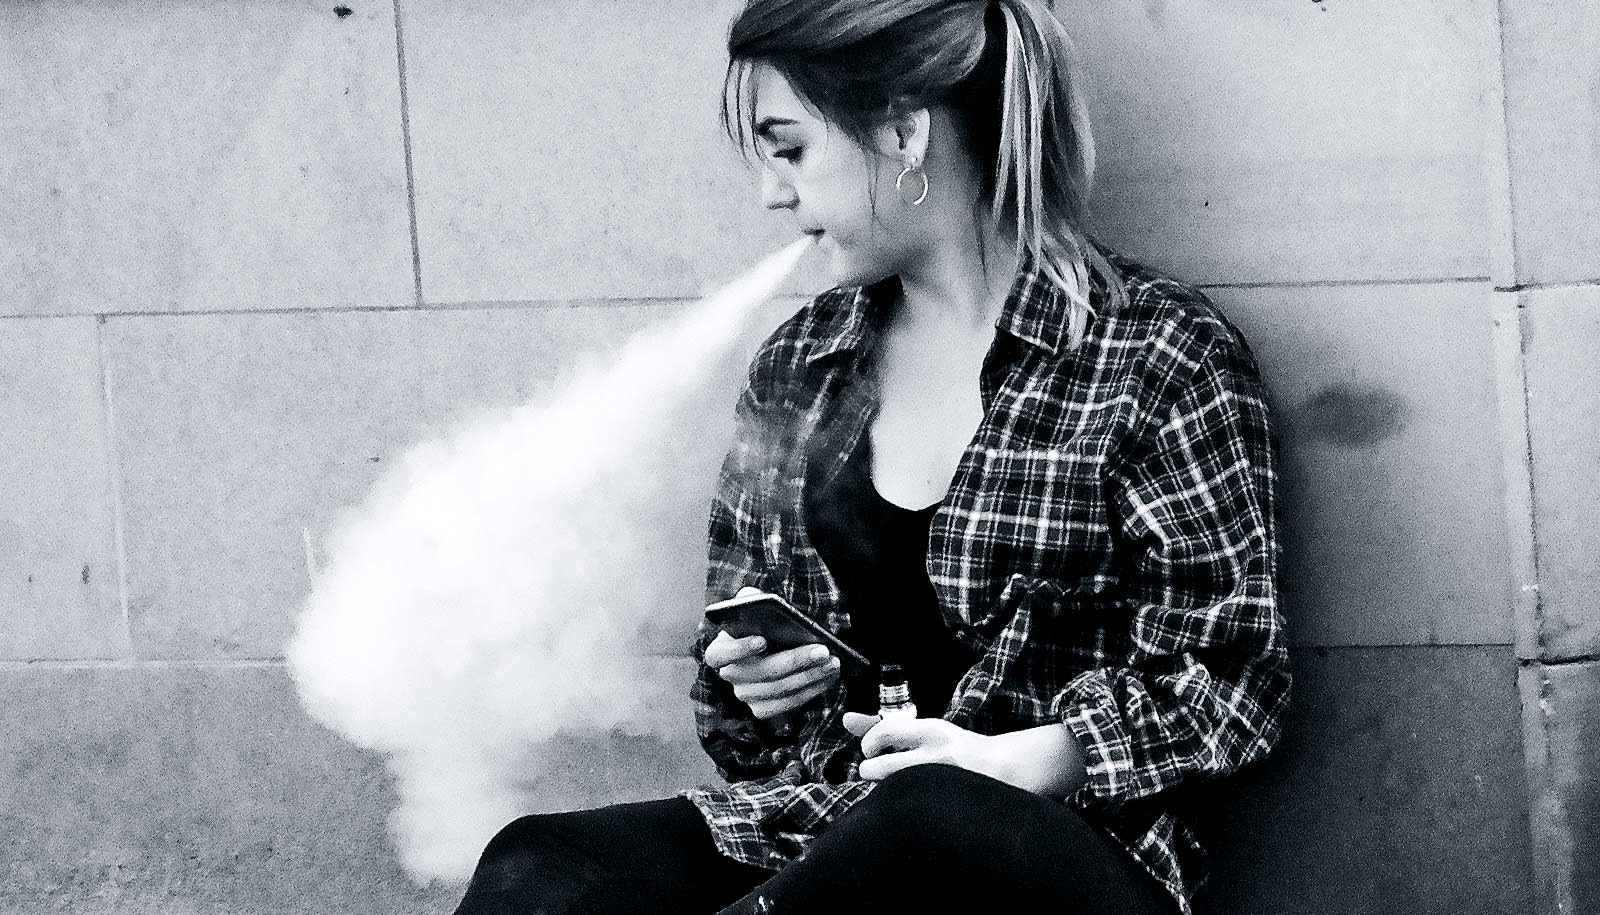 Flipboard: E-cigarette ads may boost chance teens start vaping